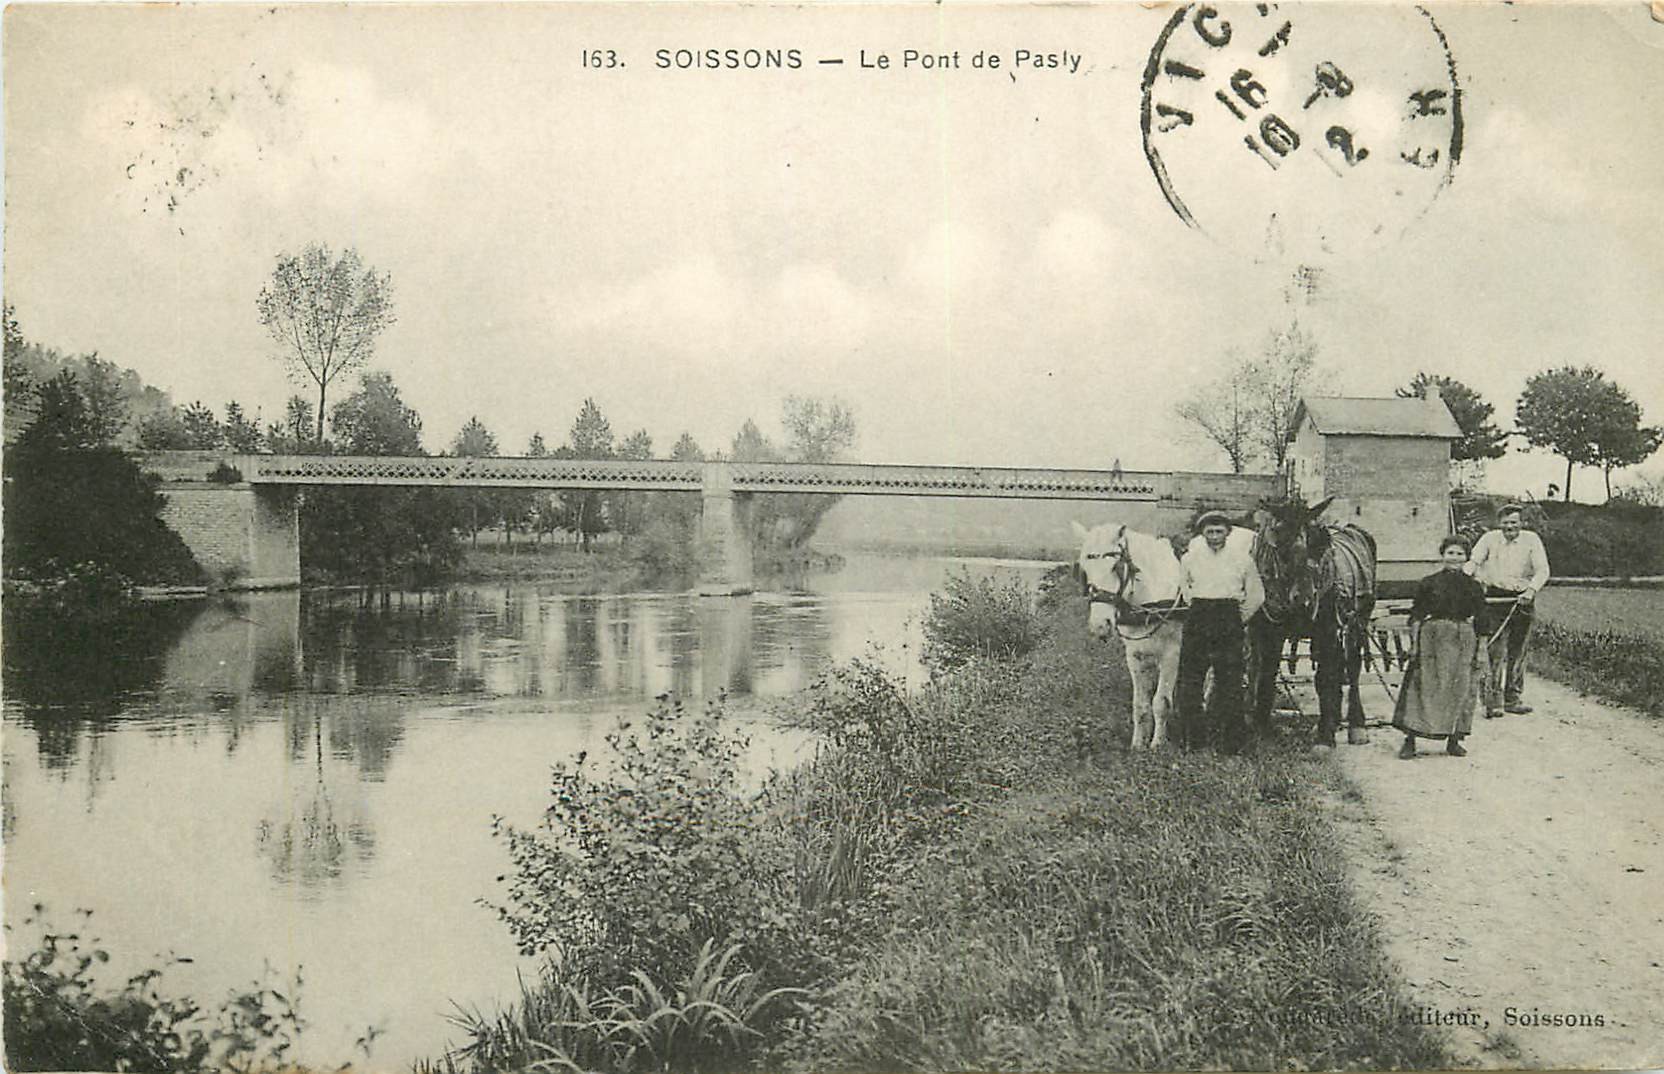 WW 02 SOISSONS. Chevaux de halage ou labours près du Pont de Pasly 1912